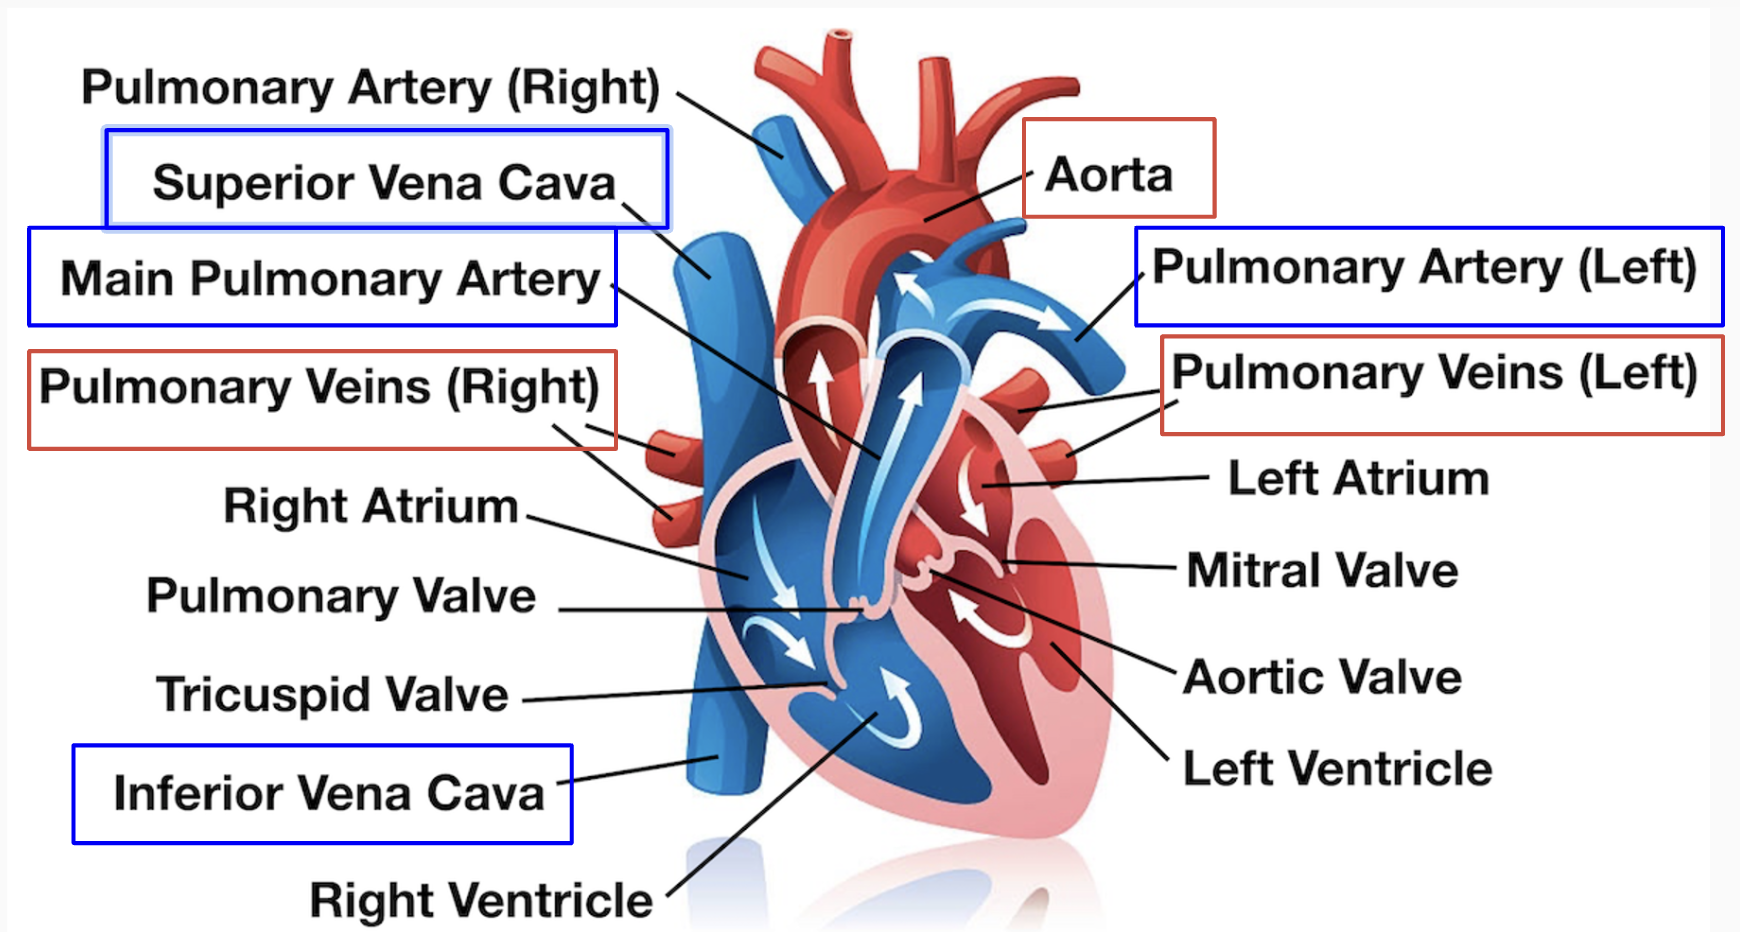 <ul><li><p>Vena cava</p><ul><li><p>Has inferior and superior to carry blood from upper and lower body</p></li></ul></li><li><p>Aorta</p></li></ul>